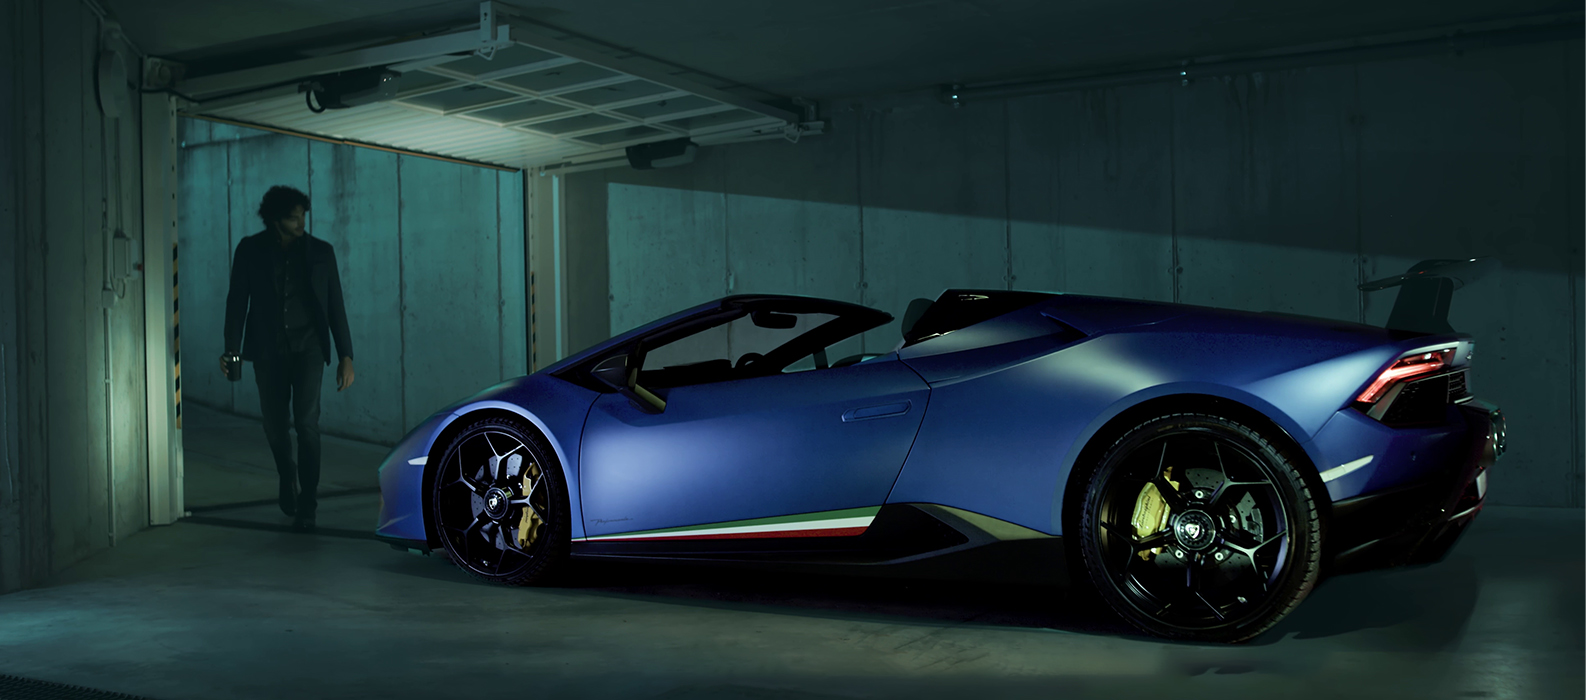 Lamborghini Selezione: Certified Pre-owned Program